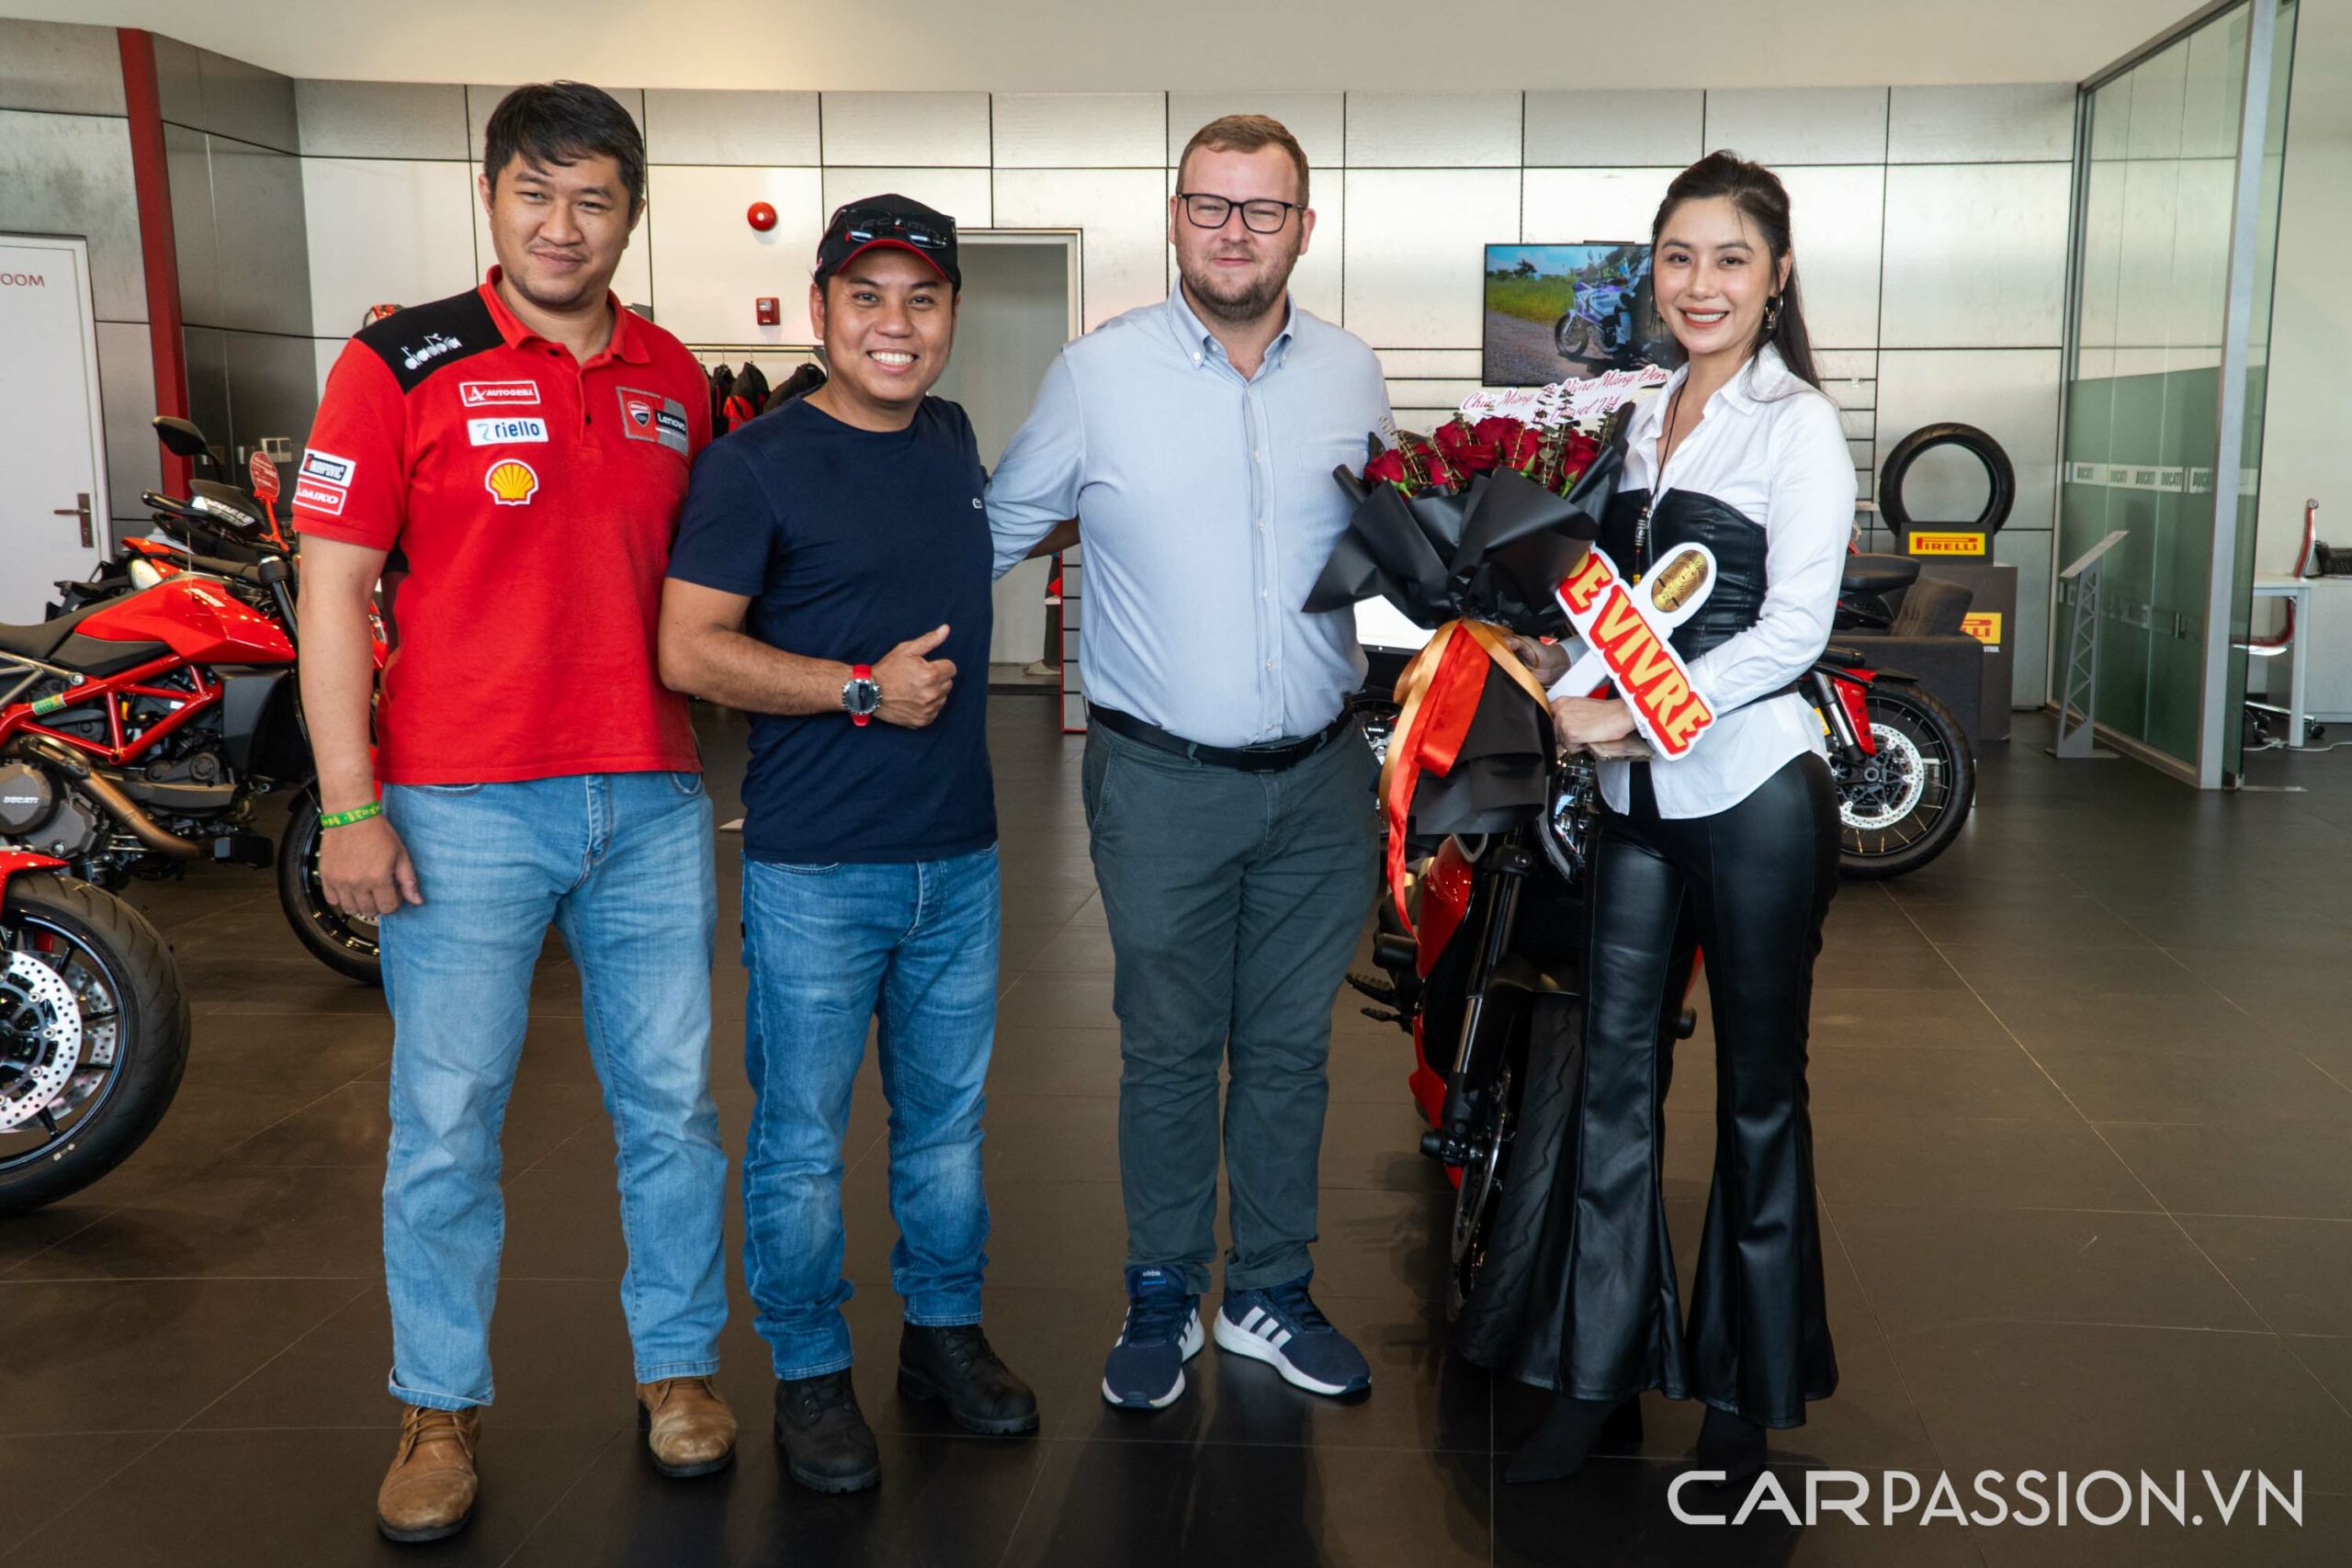 Chiếc Ducati Diavel V4 đầu tiên tại Việt Nam được bàn giao, mức giá cả tỷ đồng